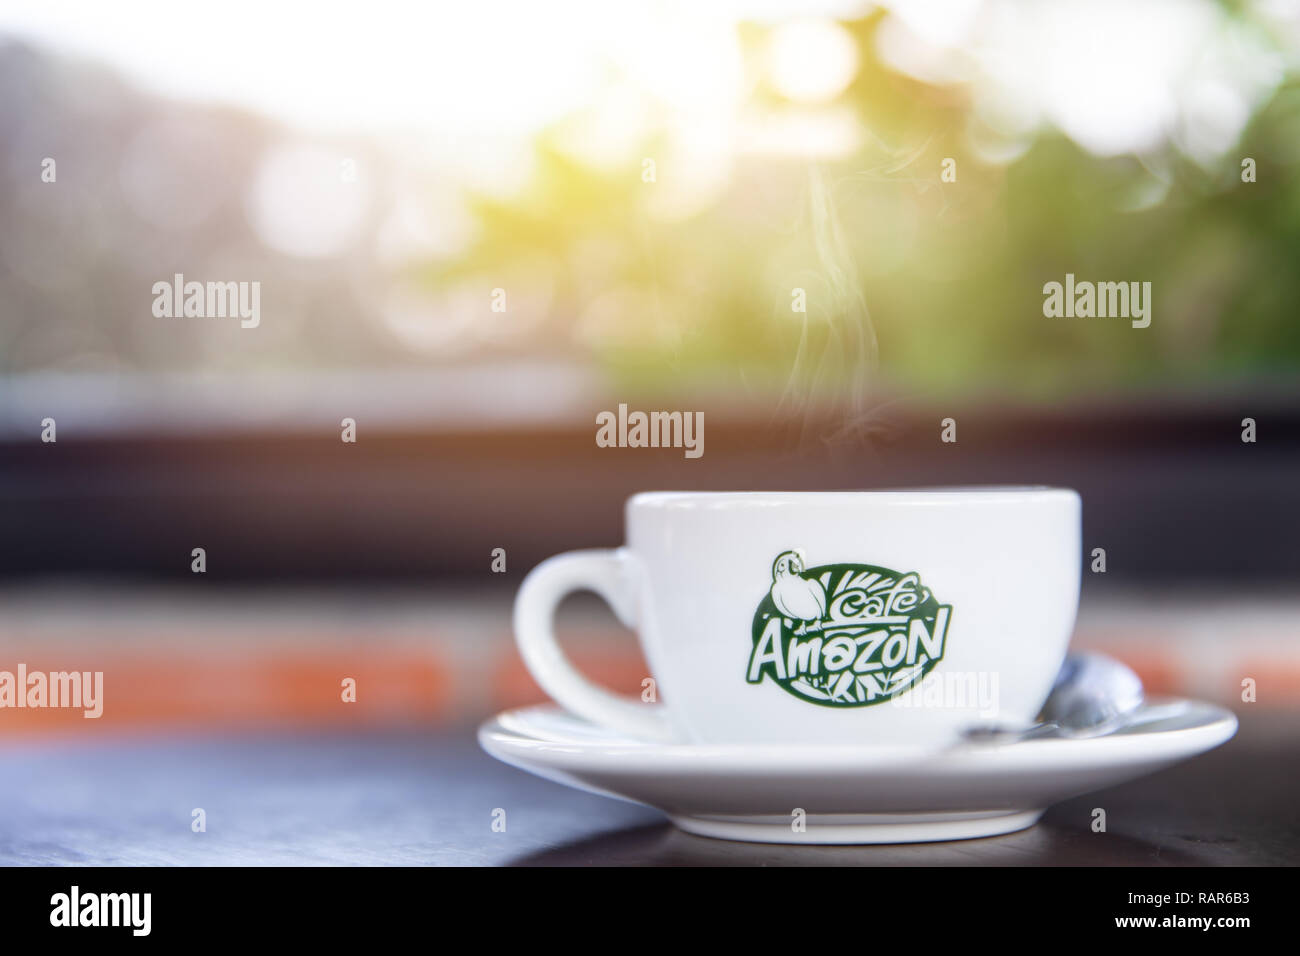 Amazon cafe immagini e fotografie stock ad alta risoluzione - Alamy